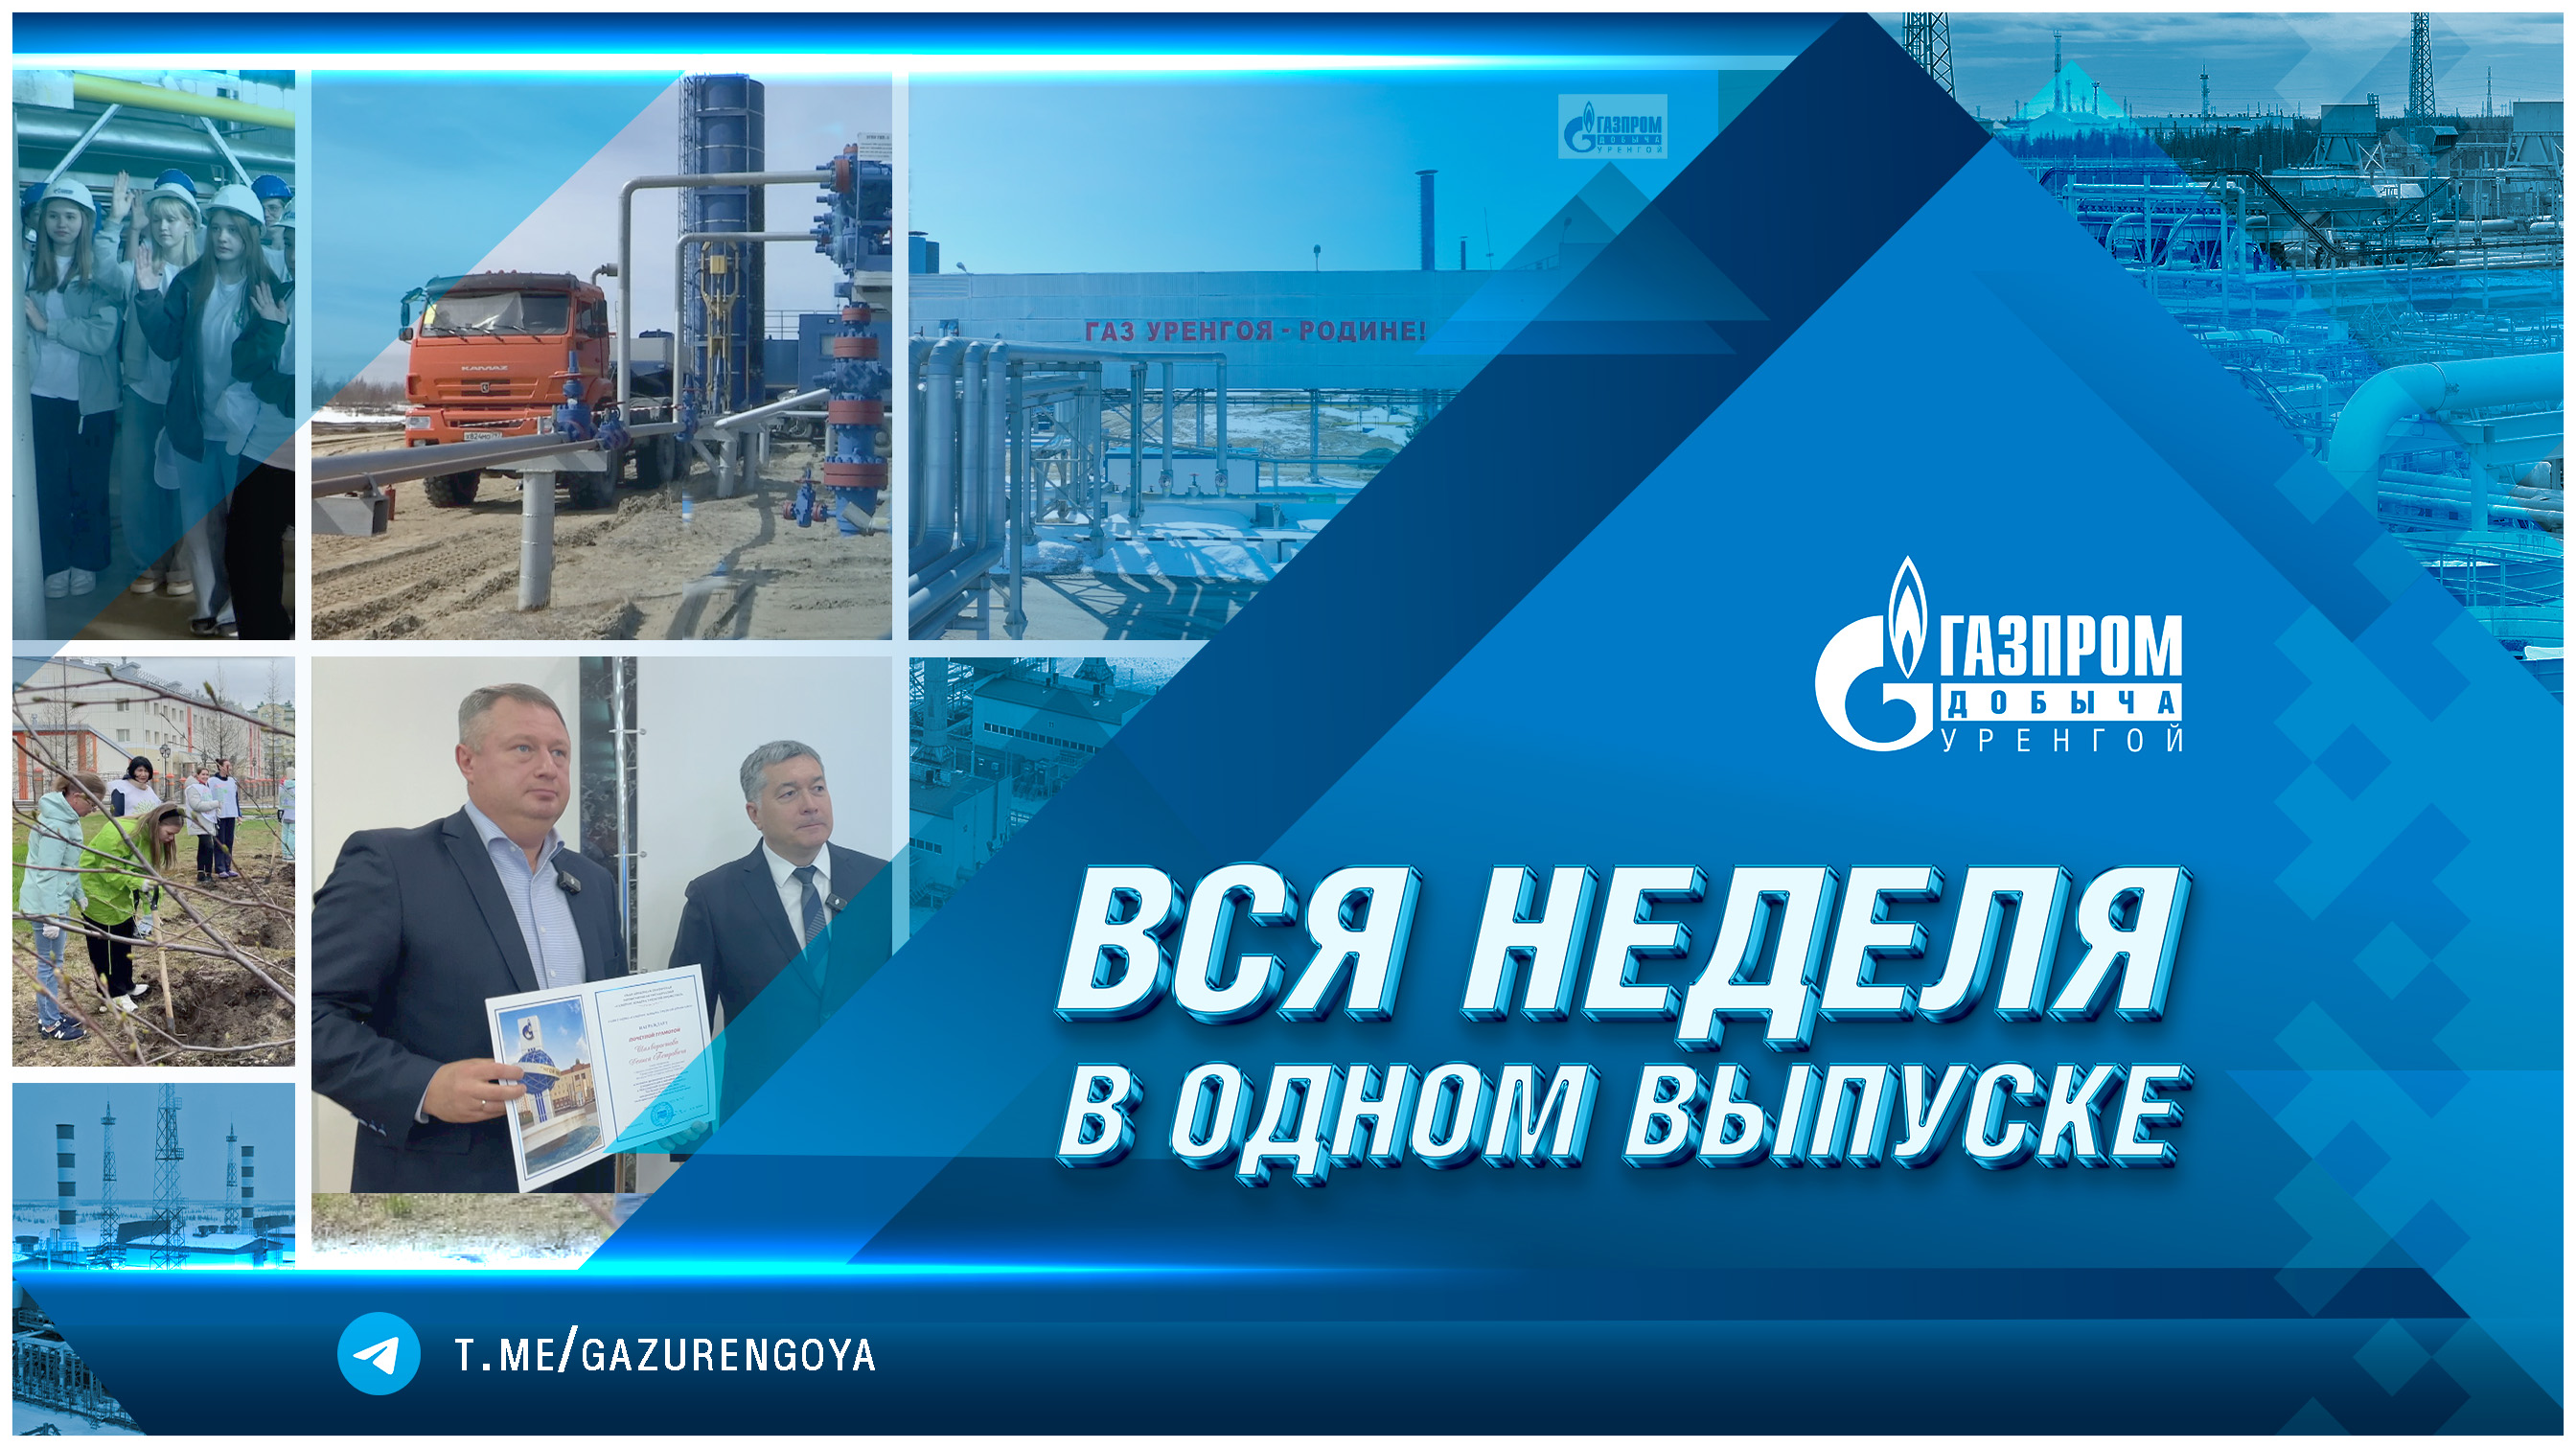 Корпоративные новости ООО «Газпром добыча Уренгой». Вся неделя в одном выпуске